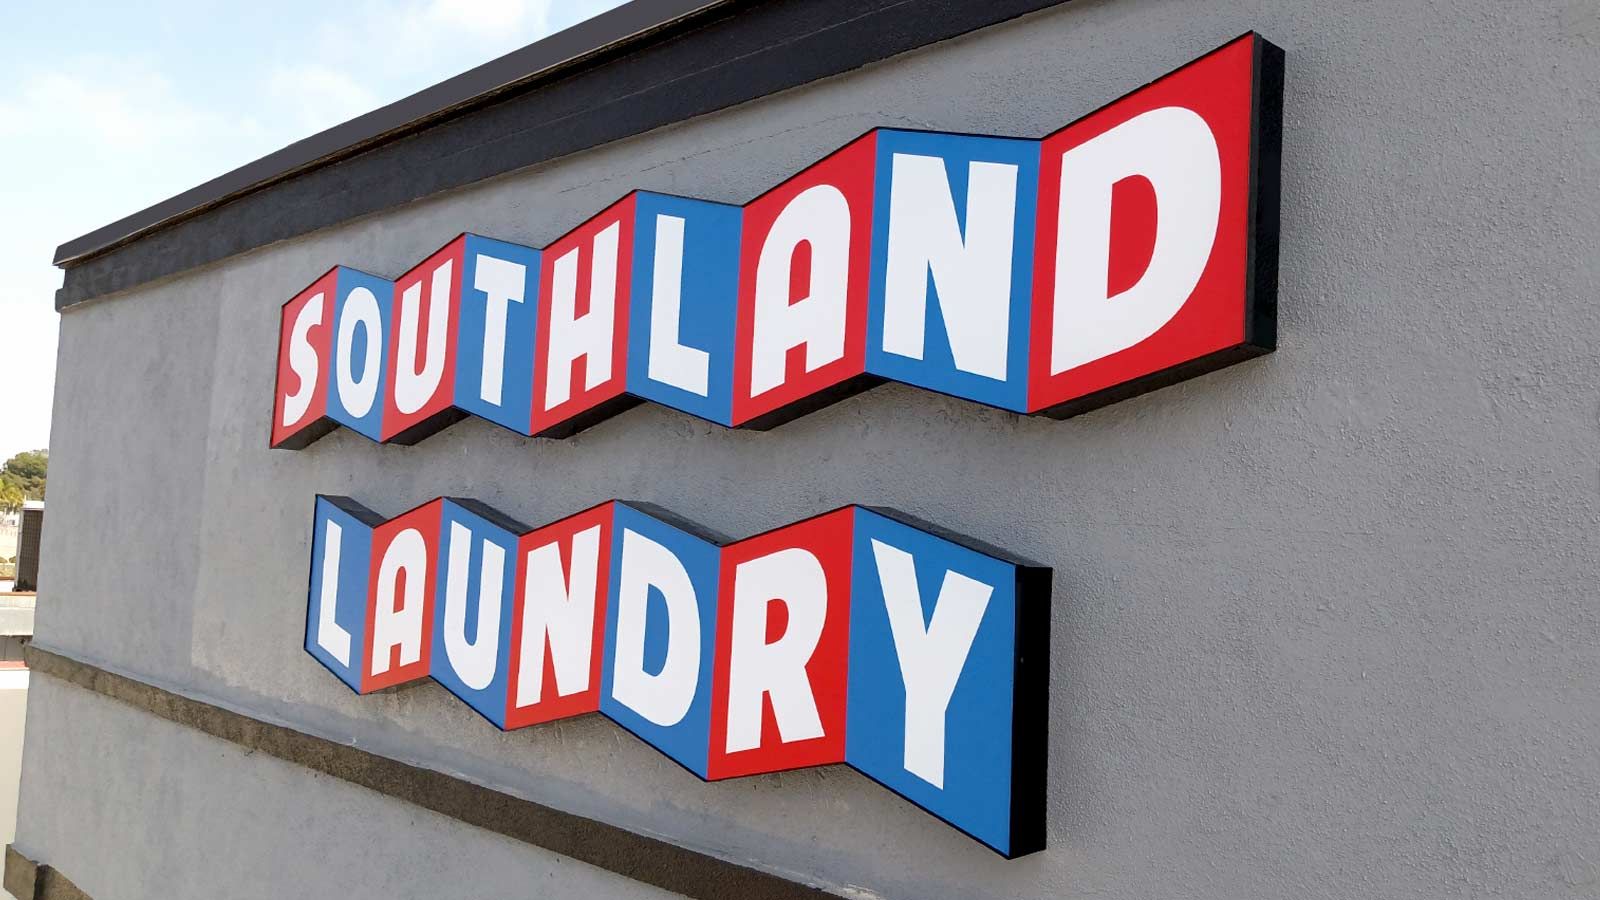 southland laundry led illuminated building display